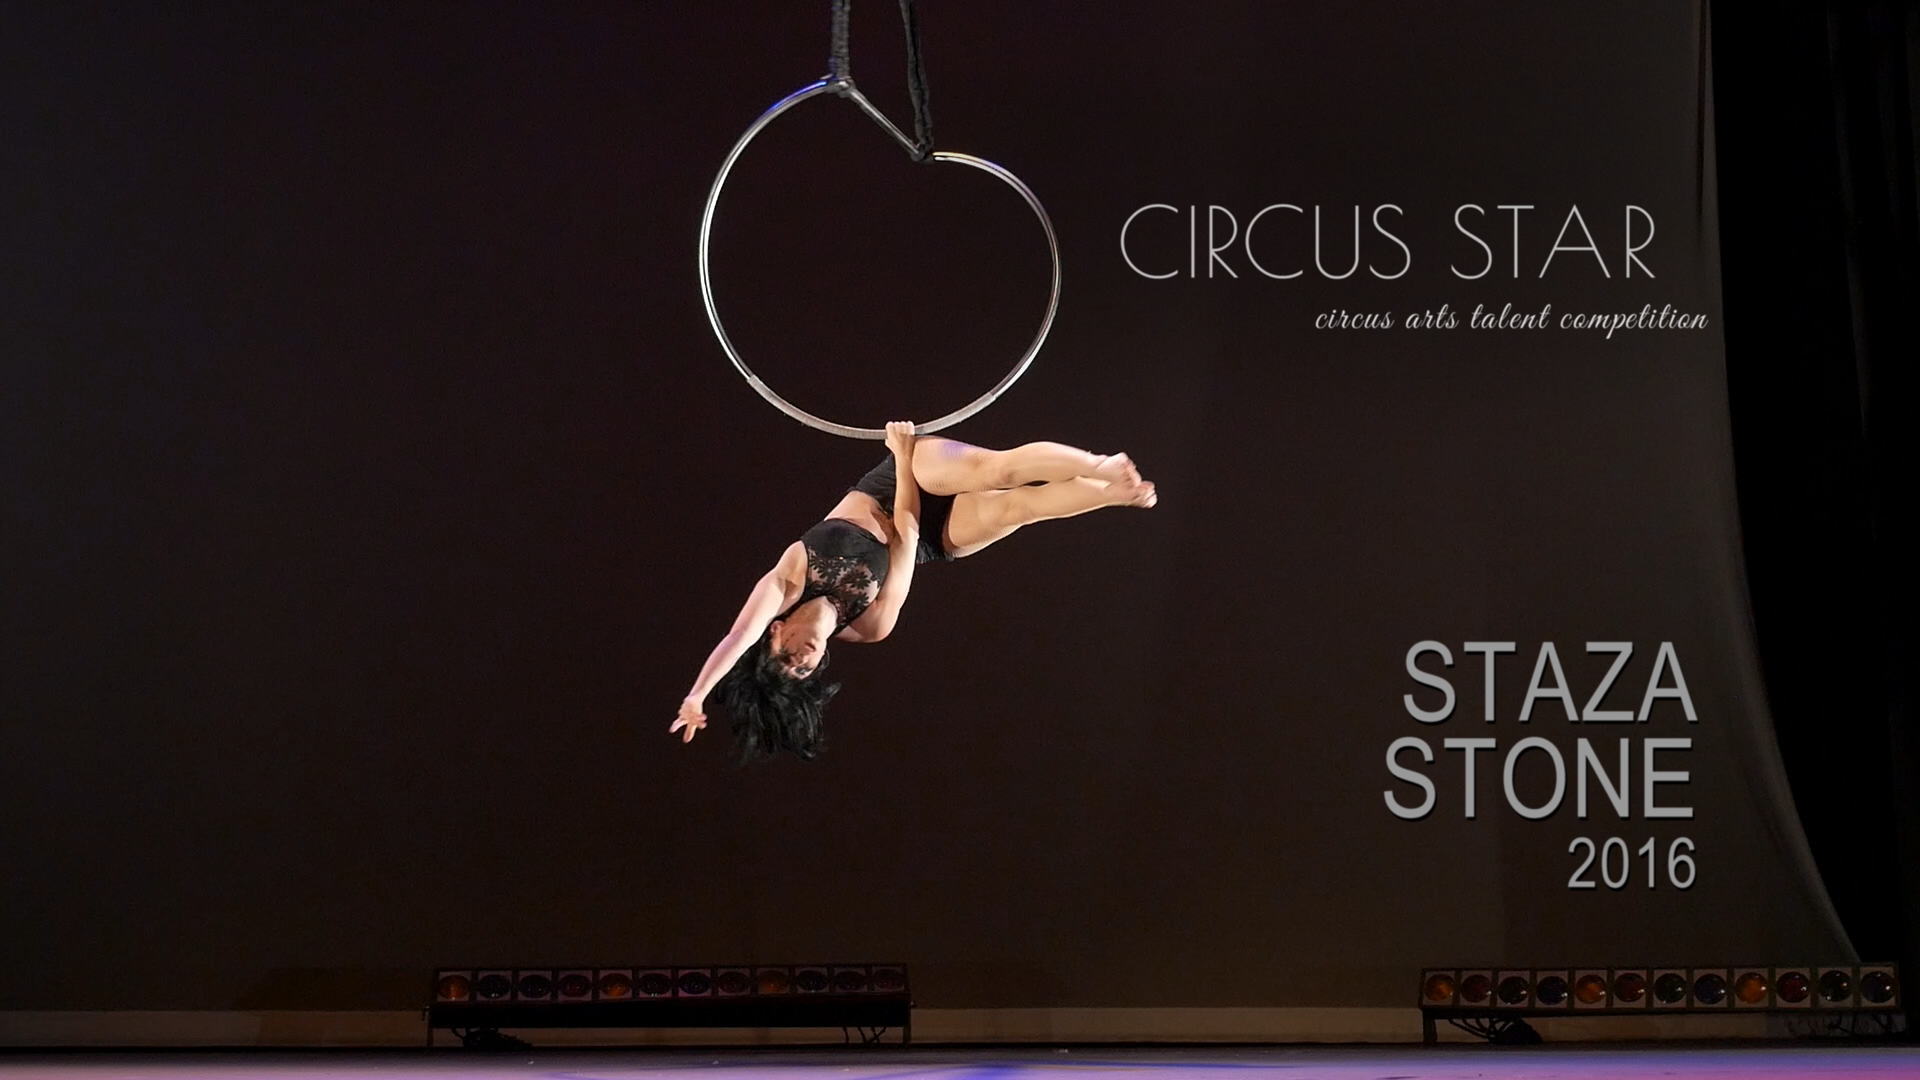 Staza Stone, mobi, Circus Star USA 2016 performer